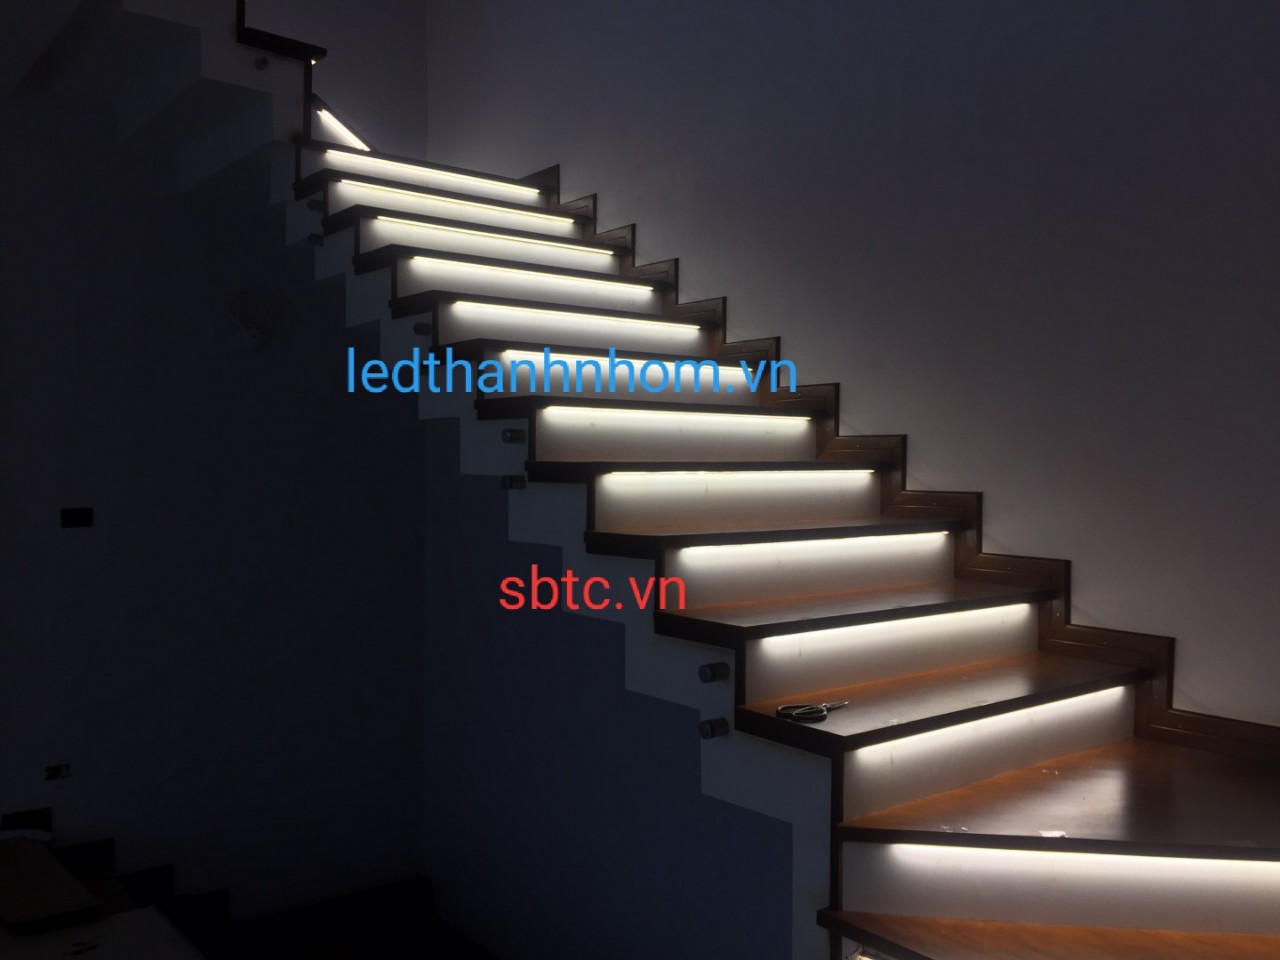 Tổng hợp các ứng dụng của đèn led thanh nhôm cho công trình